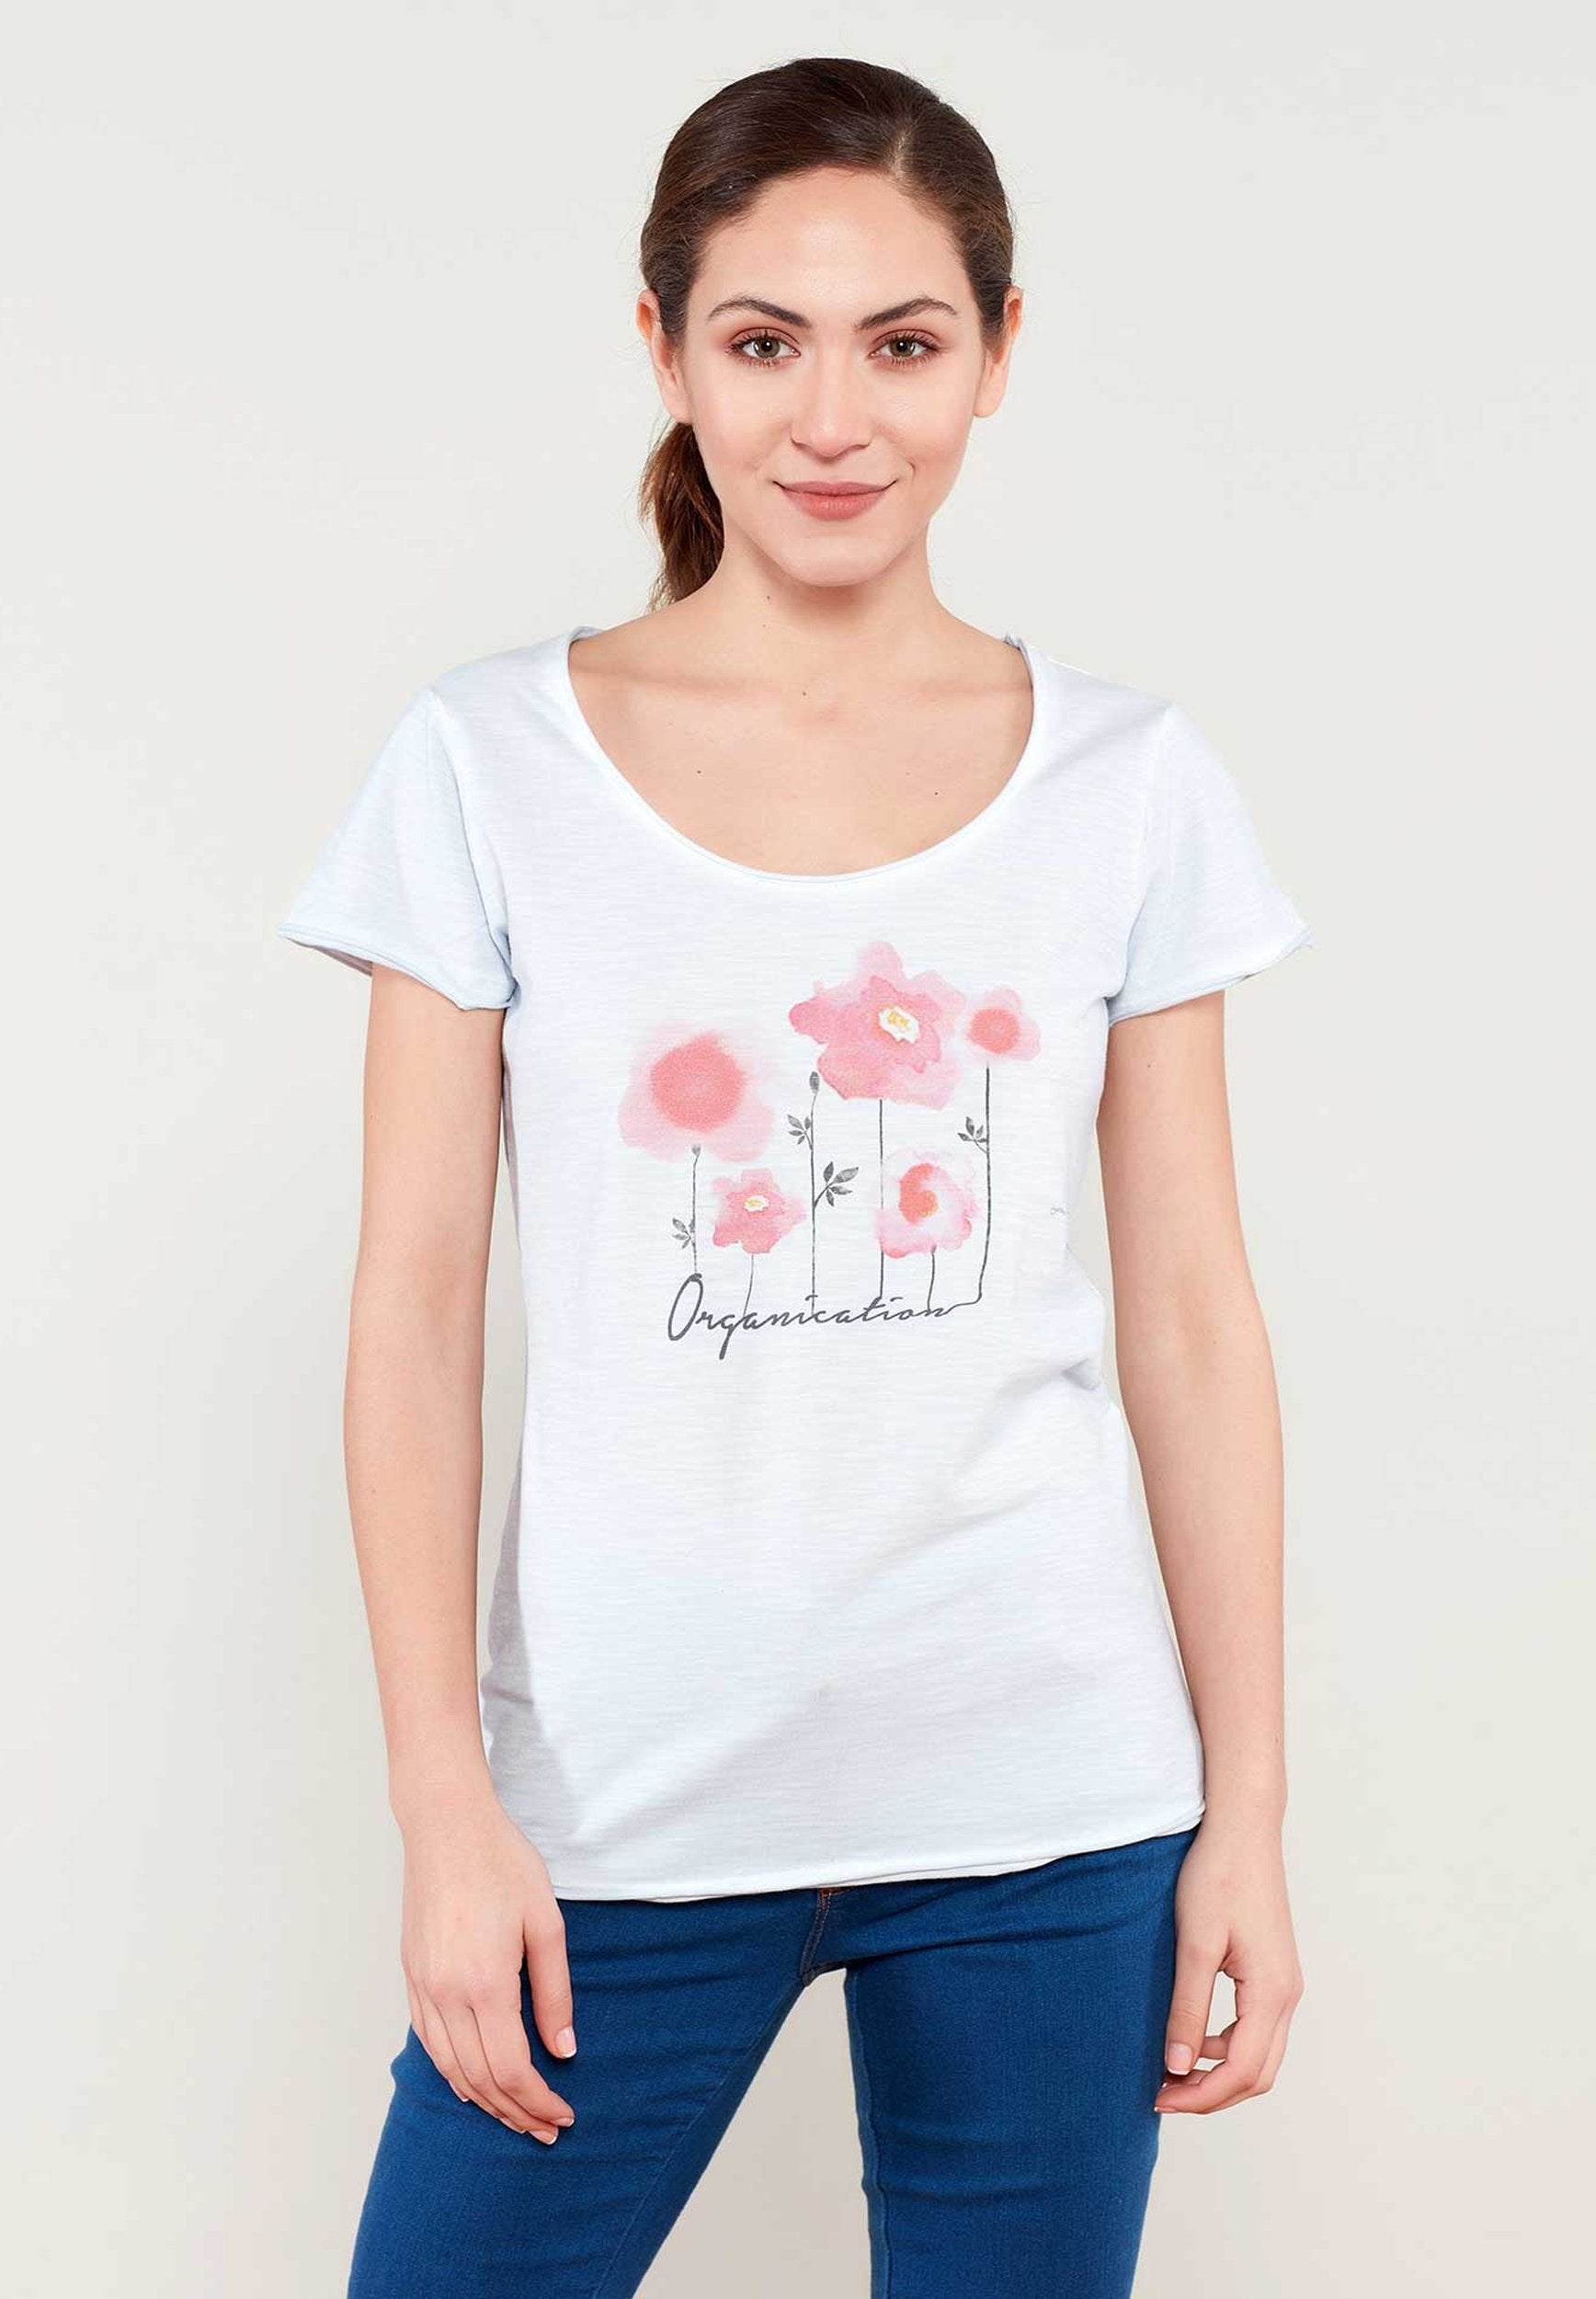 Bedrucktes T-Shirt aus Bio-Baumwolle mit Blumen Motive